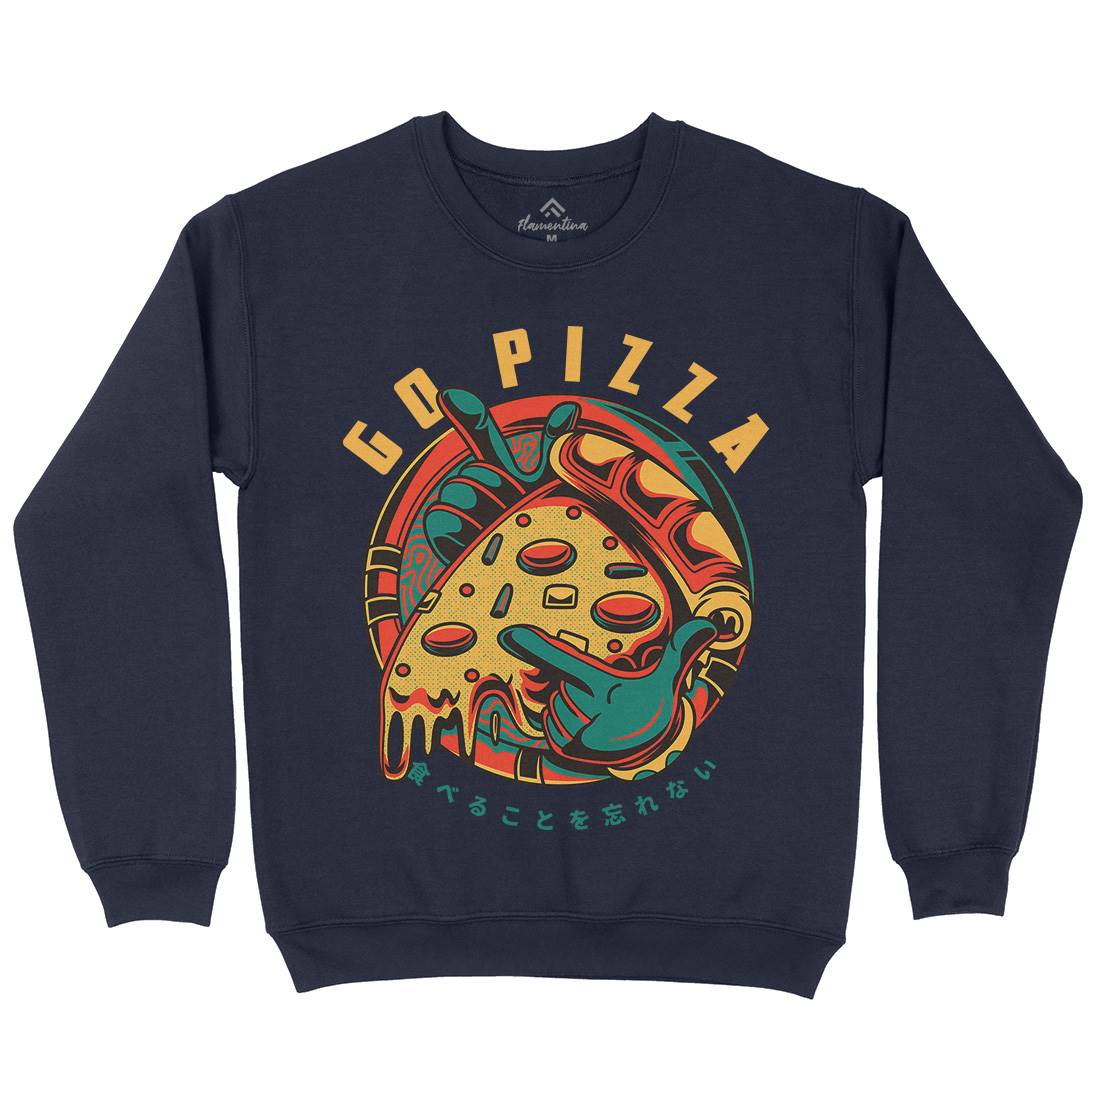 Go Pizza Kids Crew Neck Sweatshirt Food D795